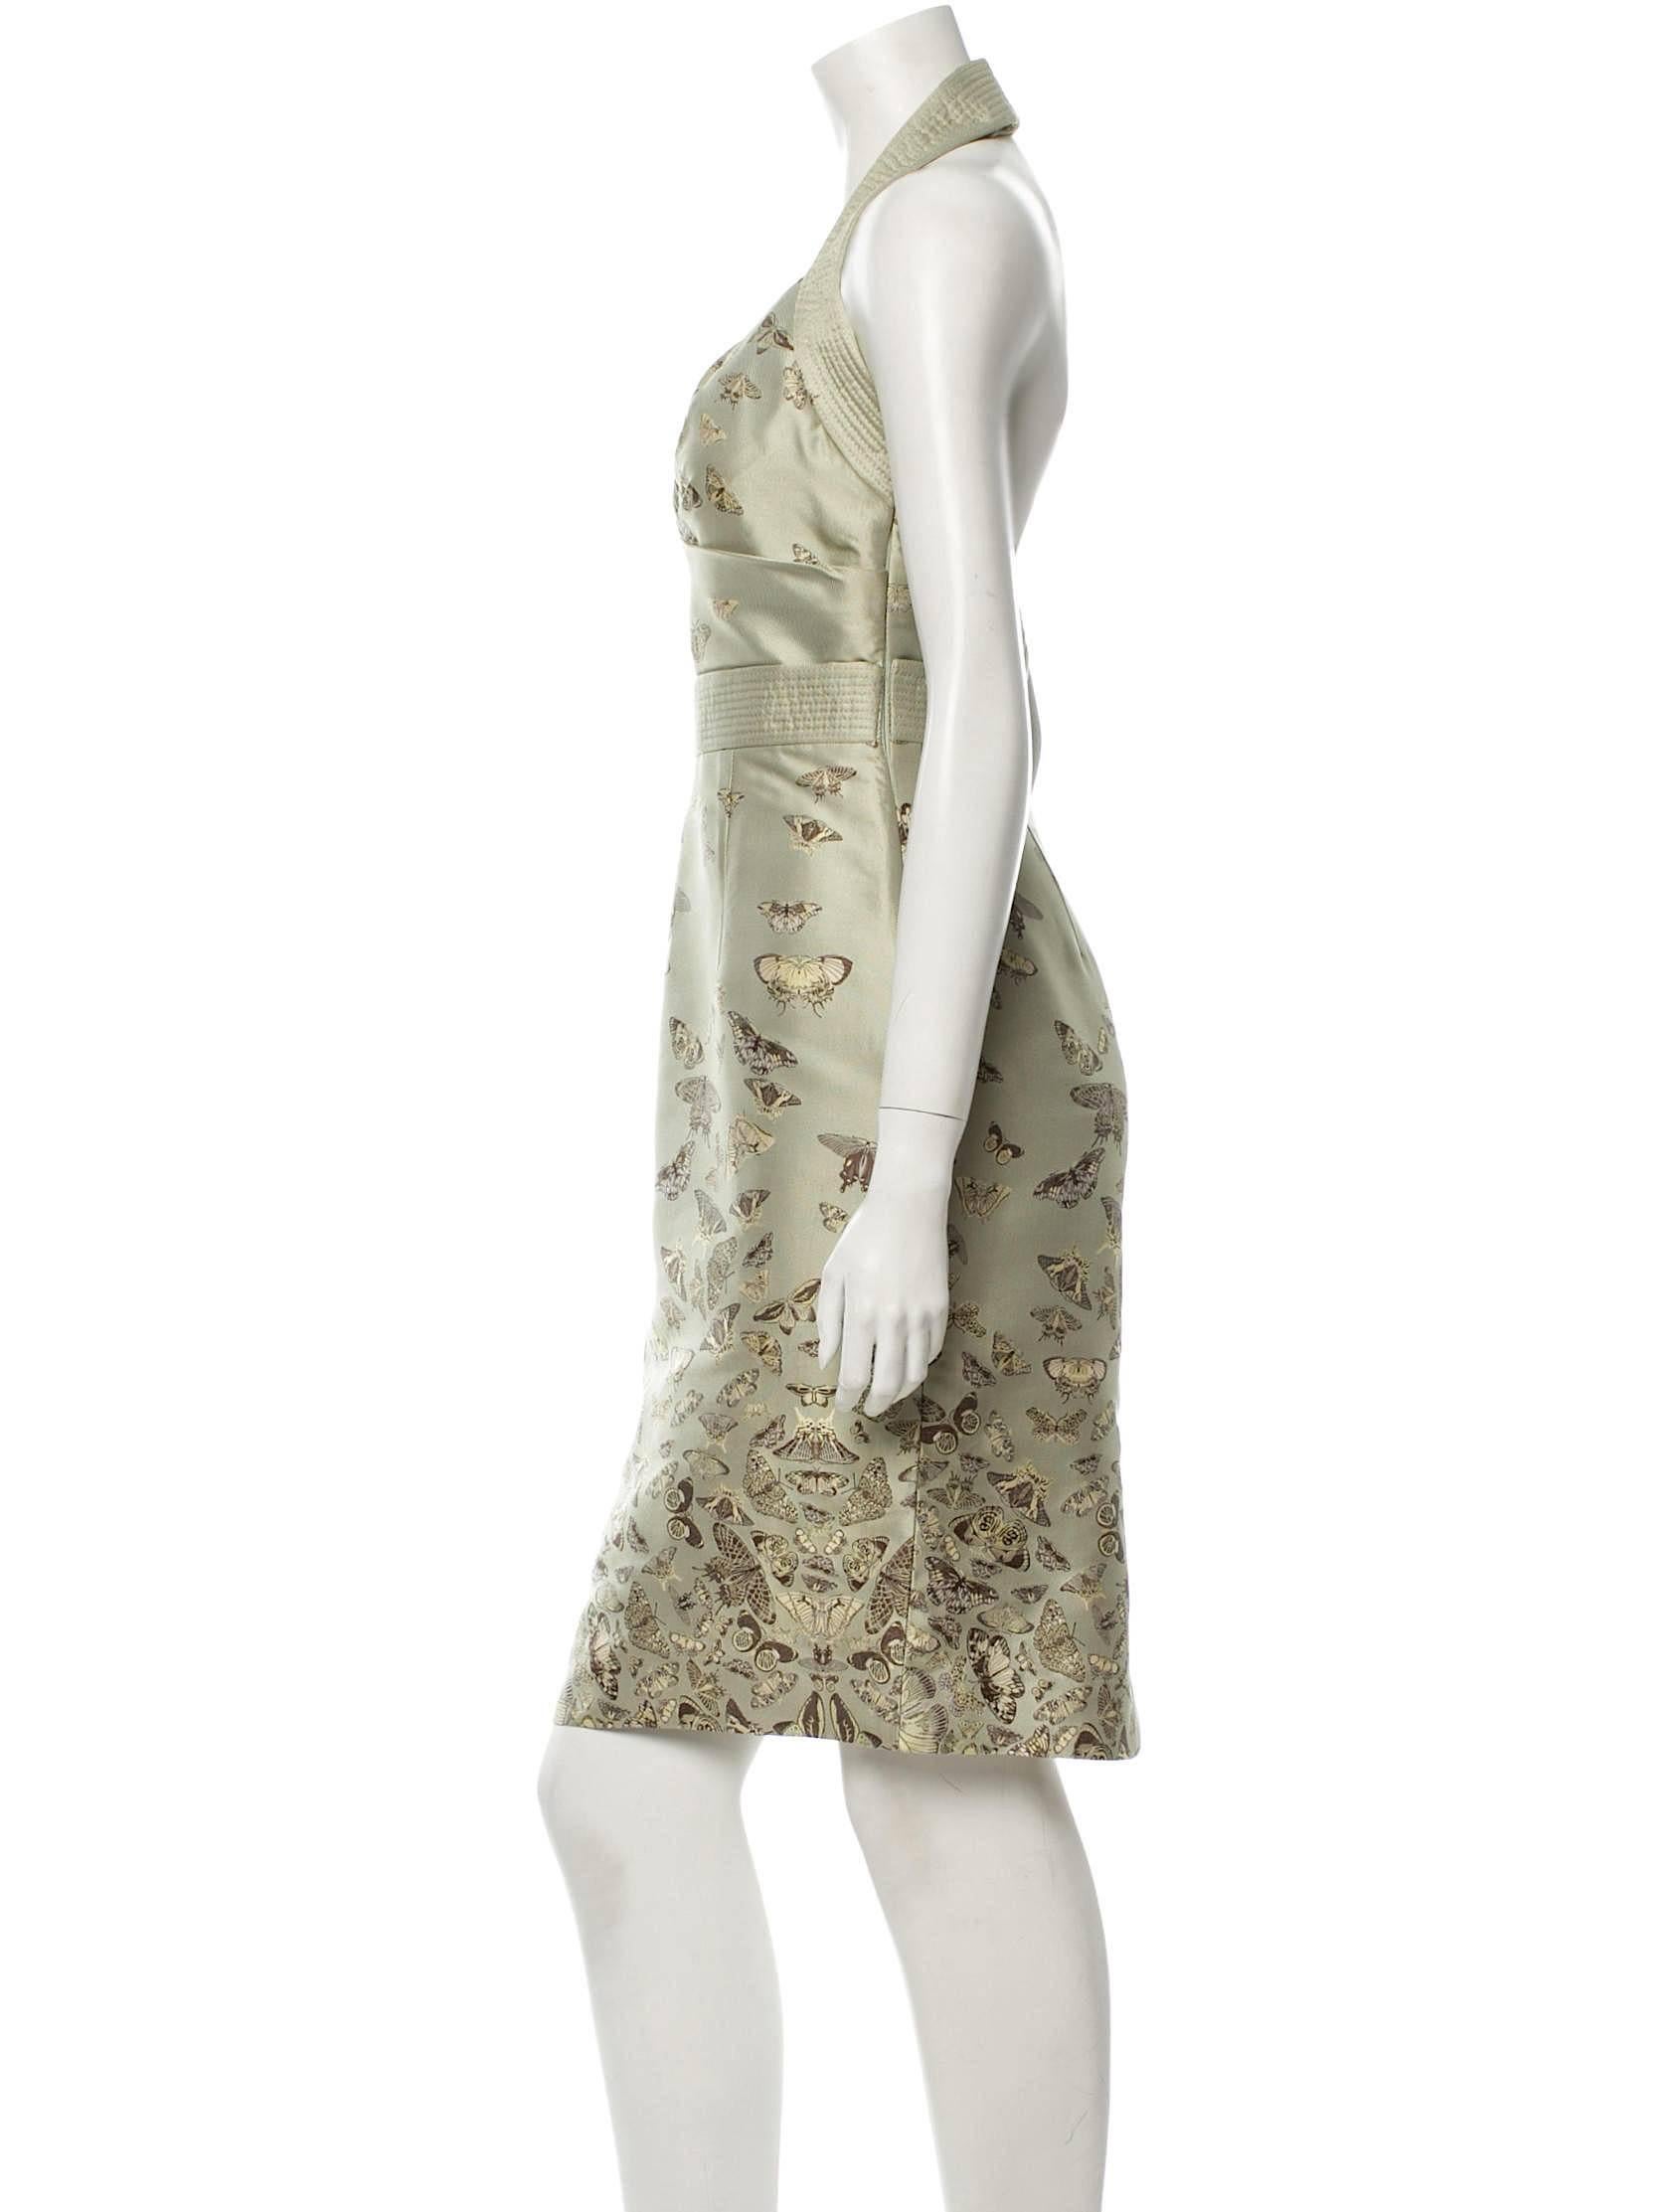 Striking Alexander McQueen Silk Halter Dress, 2005 In Excellent Condition For Sale In Bethesda, MD